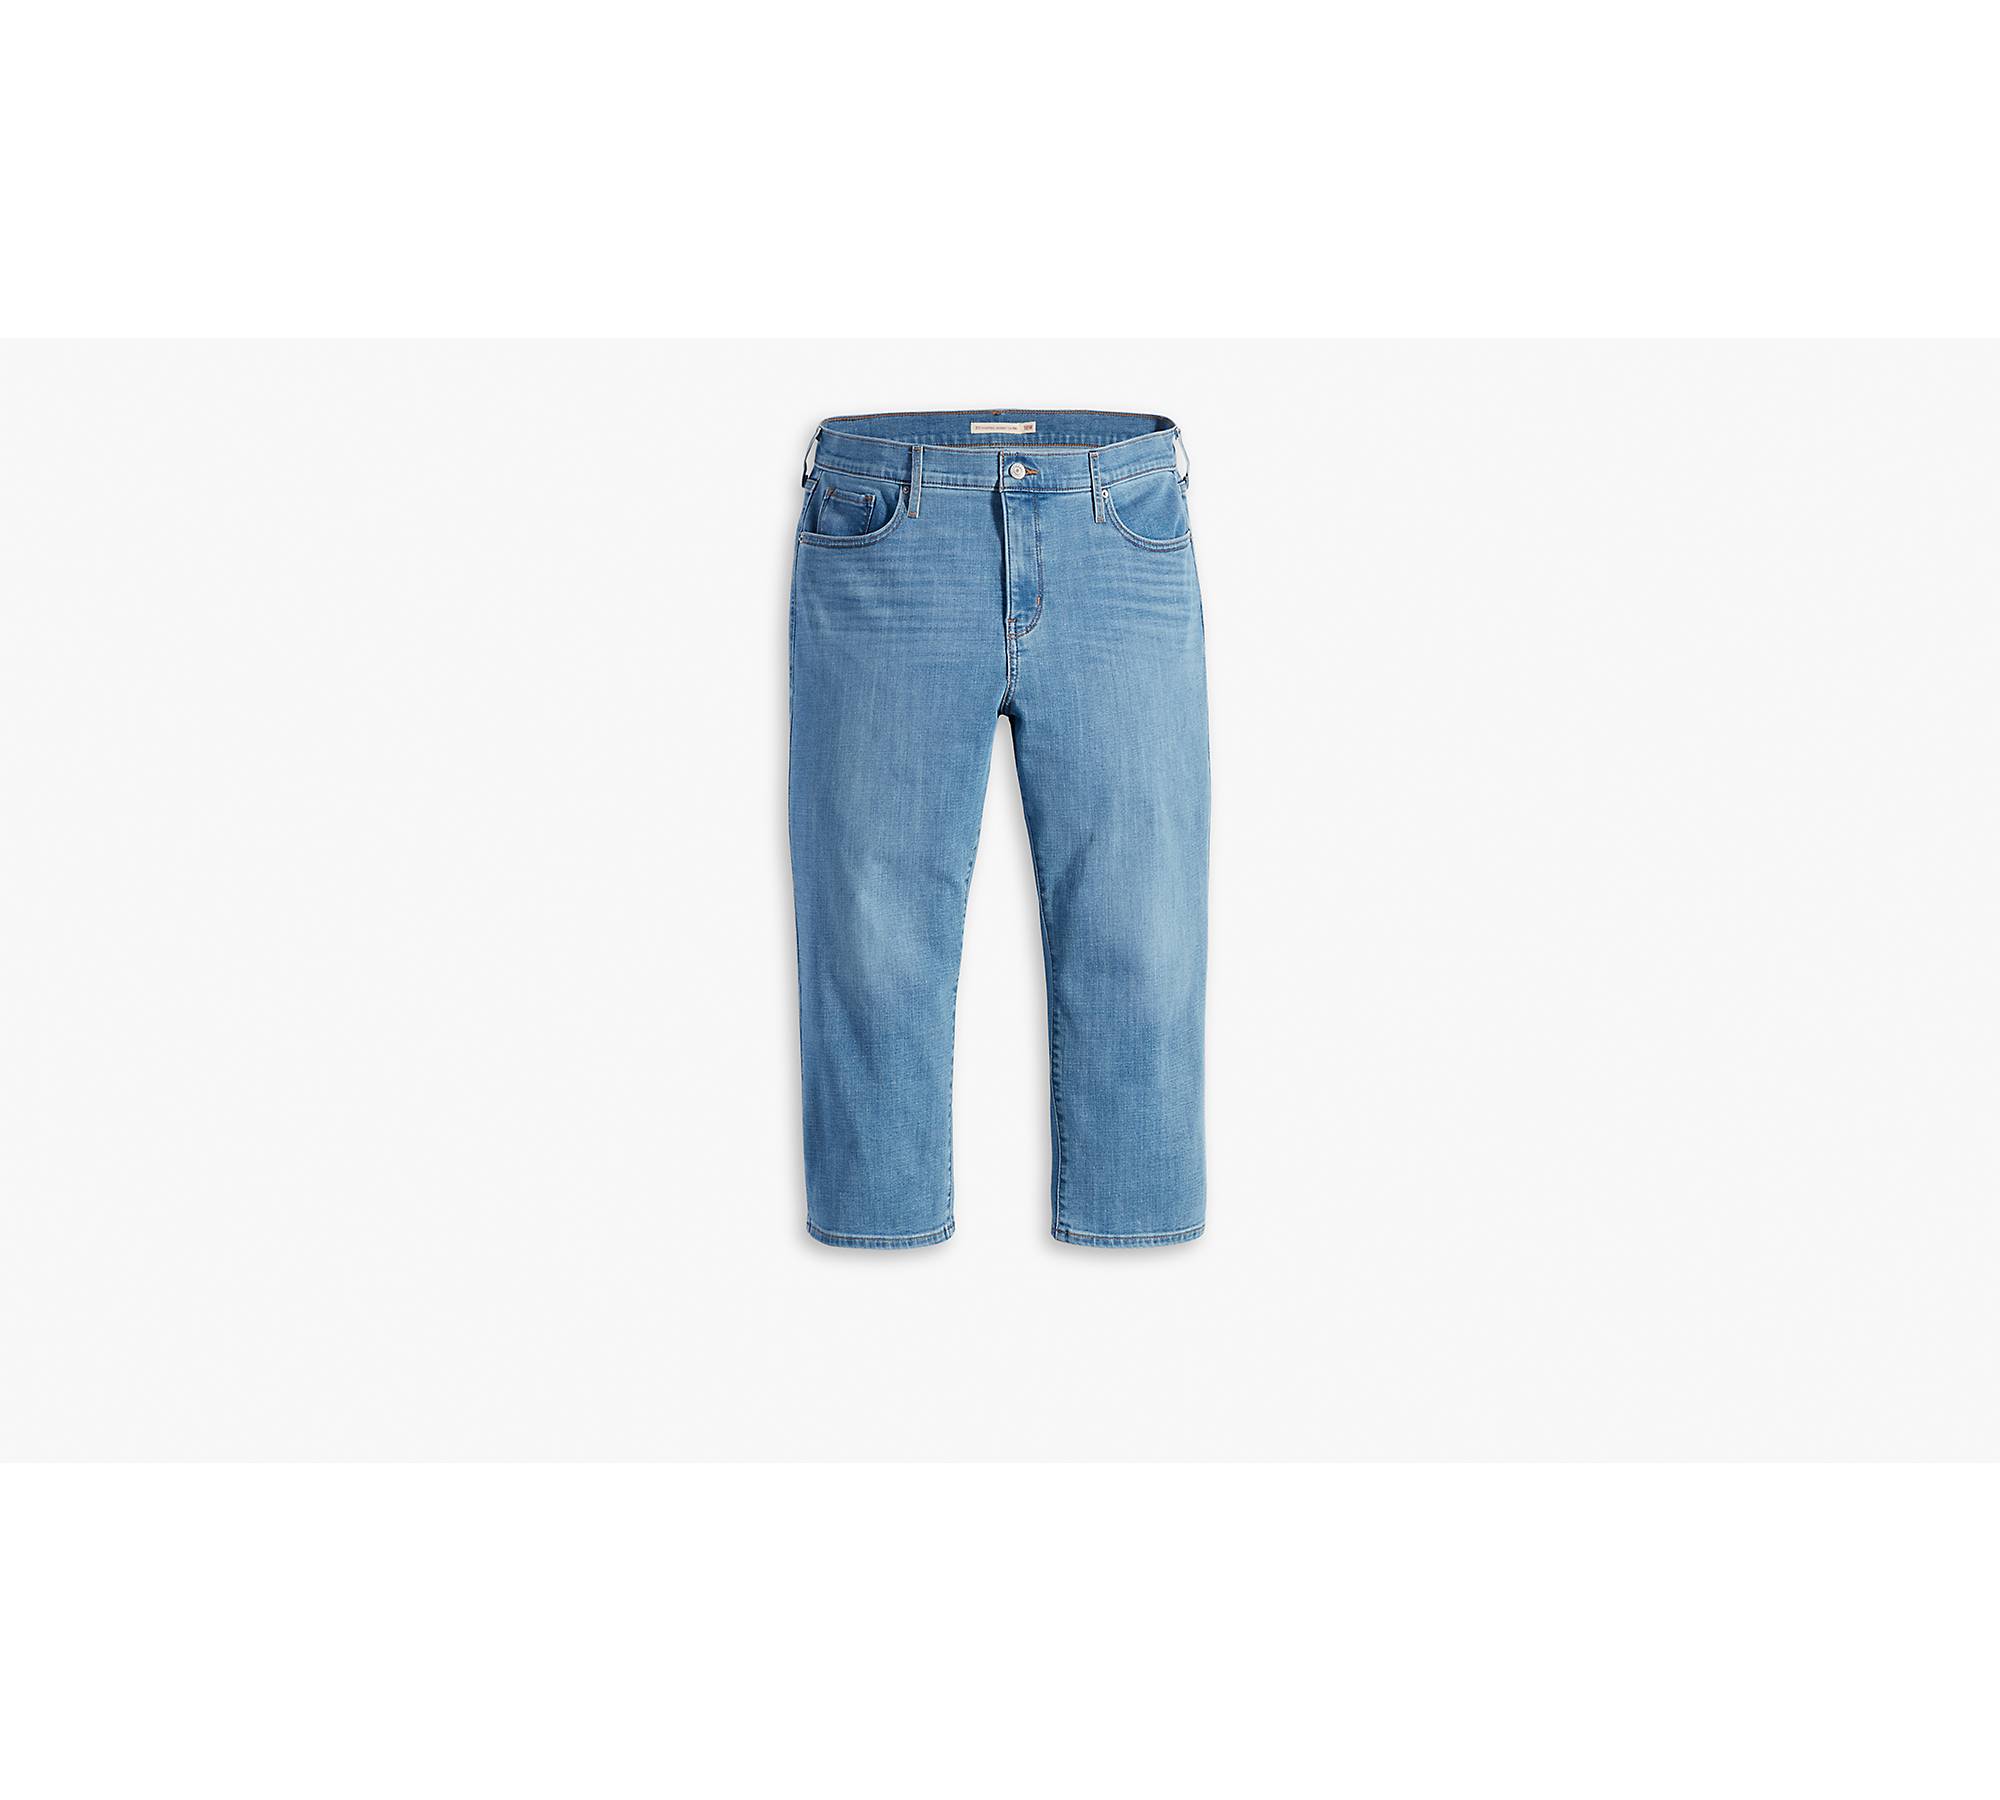 Levi's Plus Size Shaping Capri Jeans - Macy's